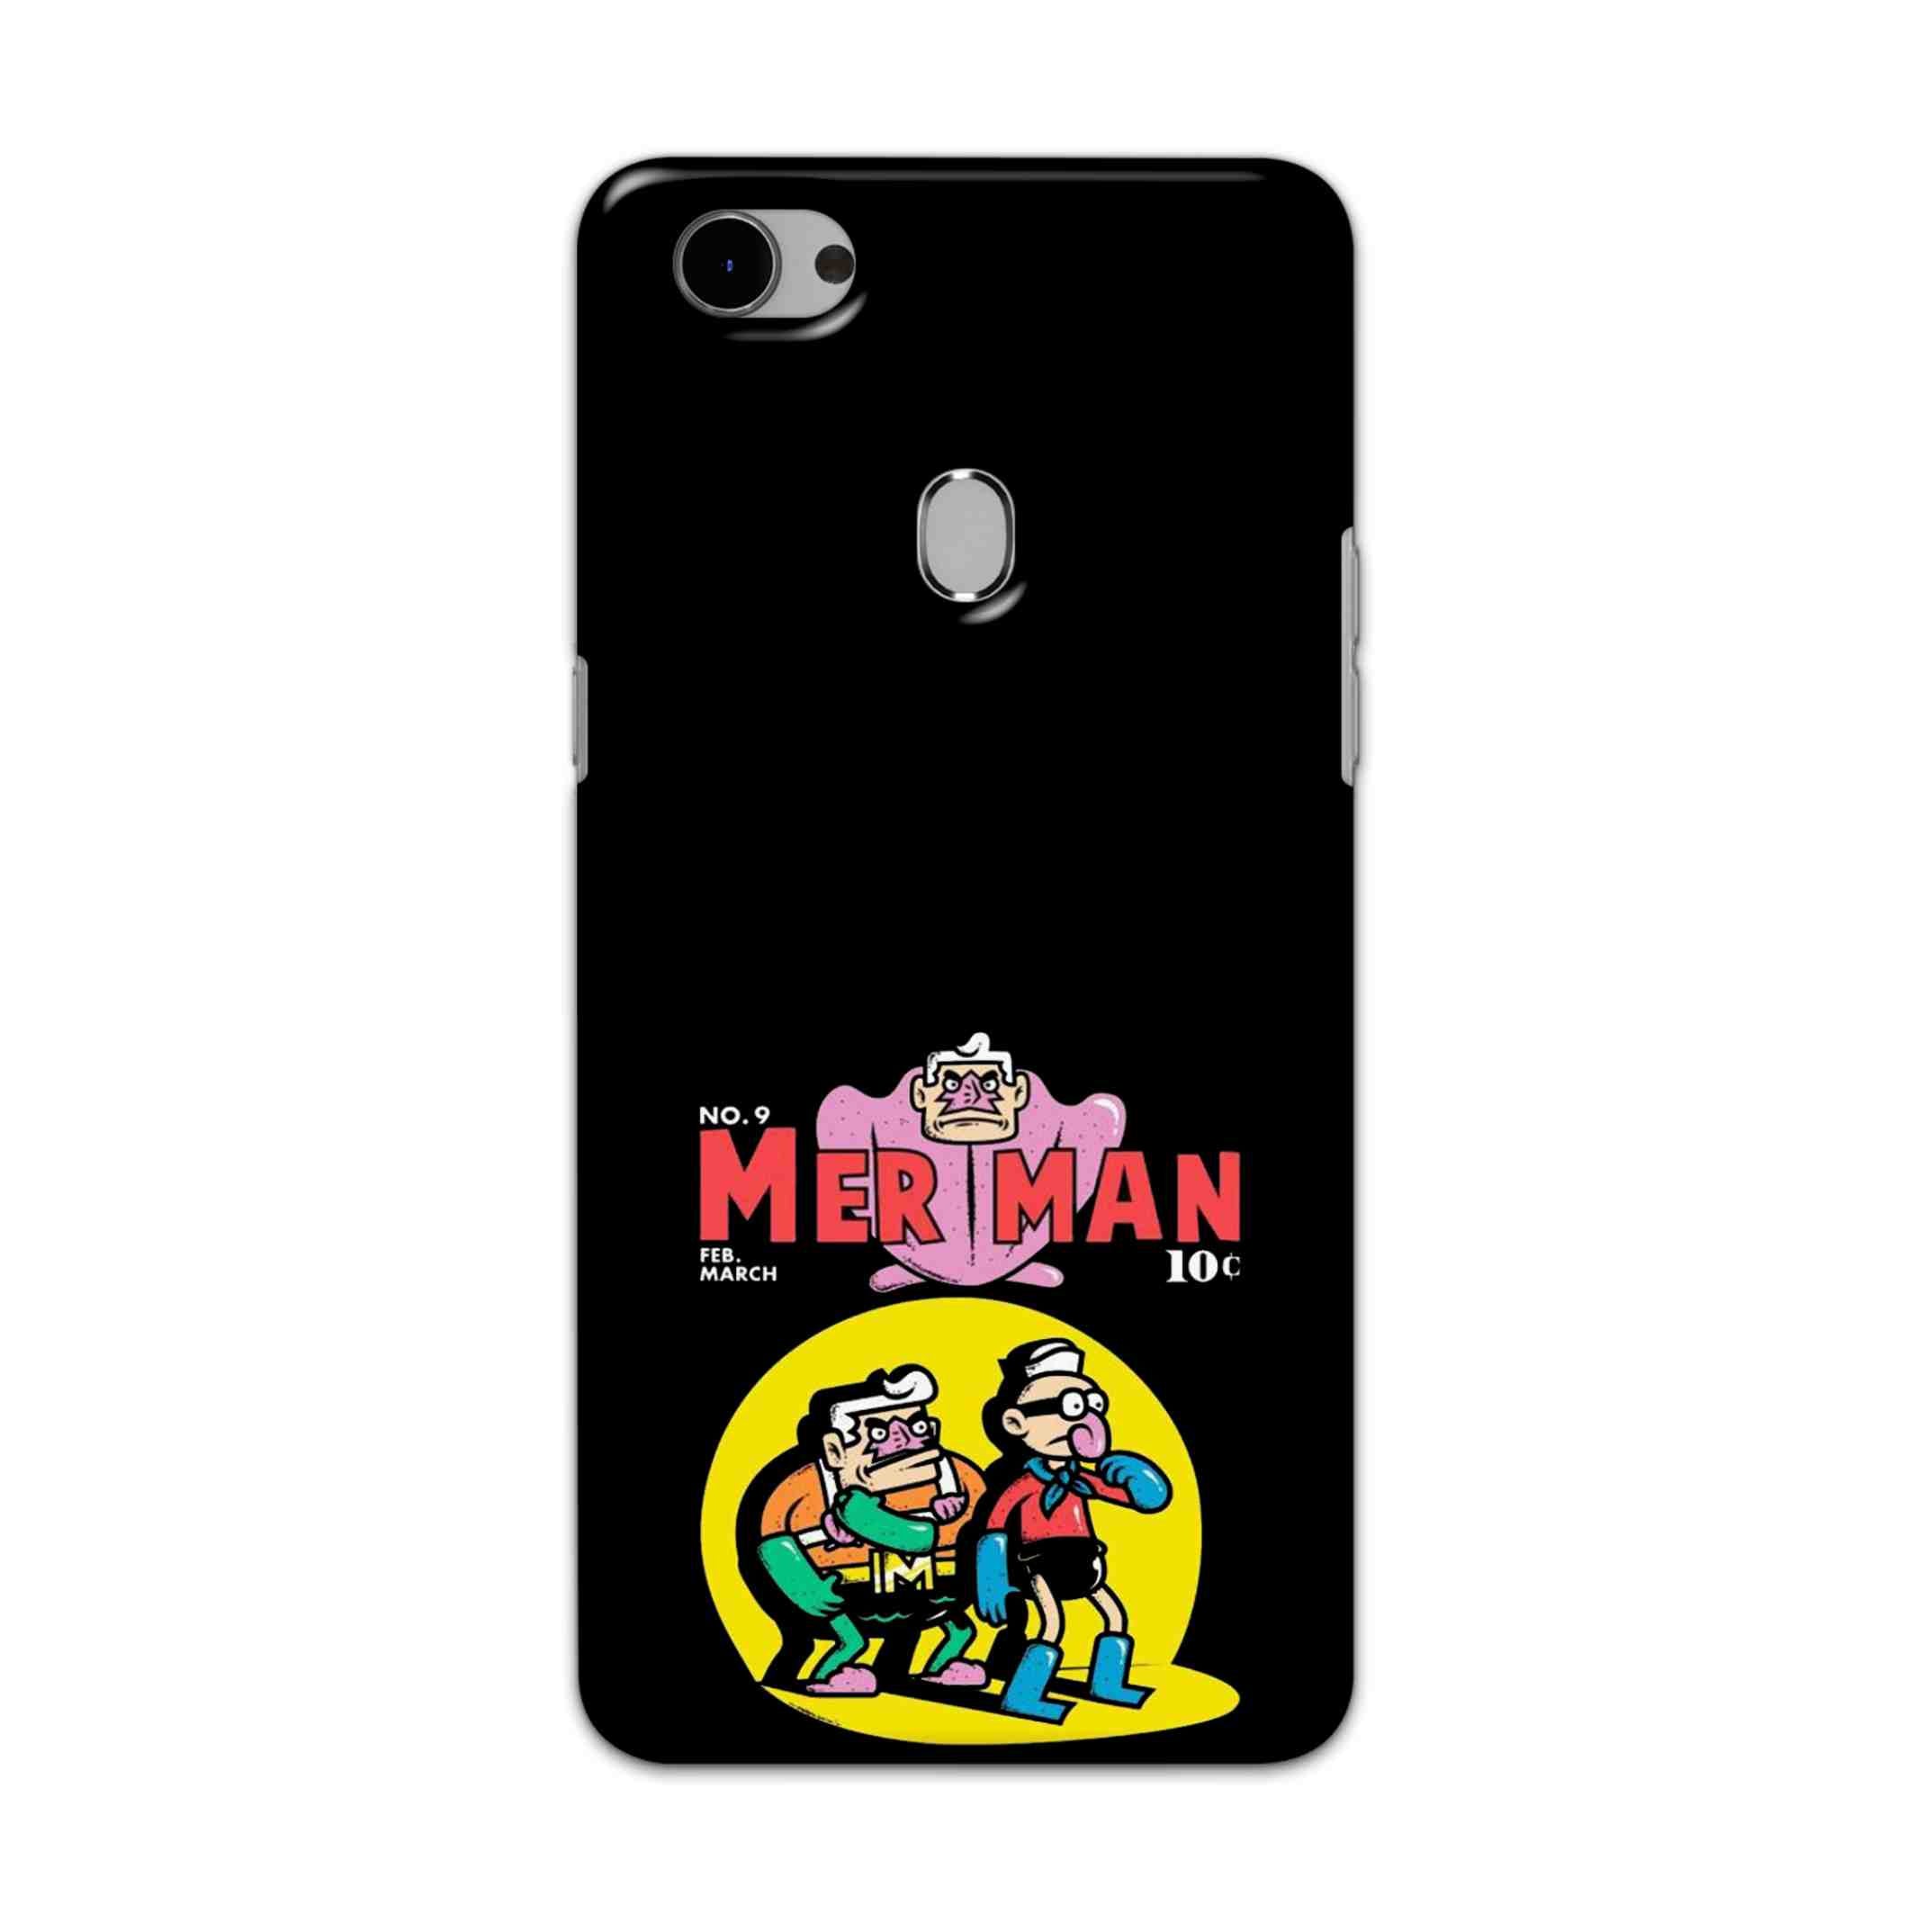 Buy Merman Hard Back Mobile Phone Case Cover For Oppo F7 Online